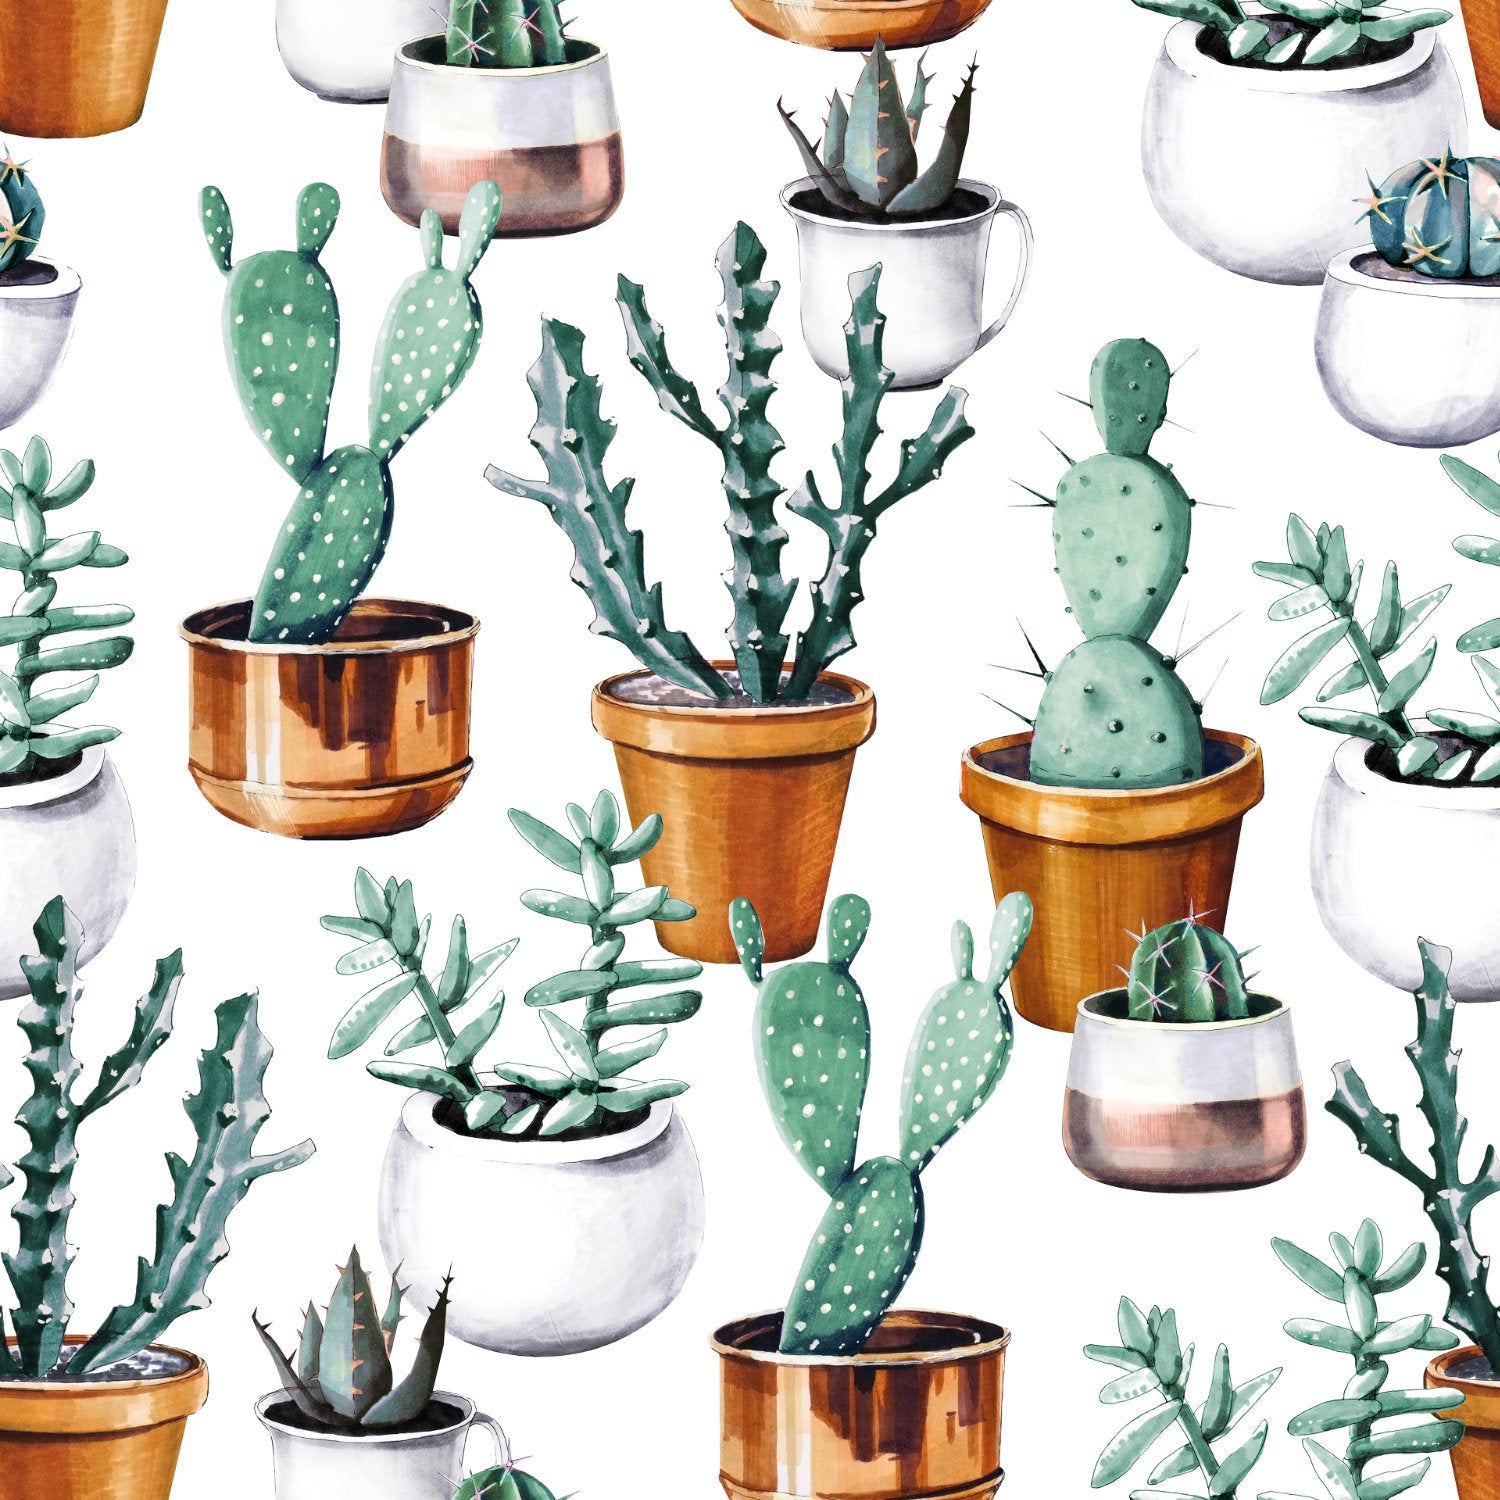 Eropt wallpaper mural consisting of various cactus | WallpaperMural.com